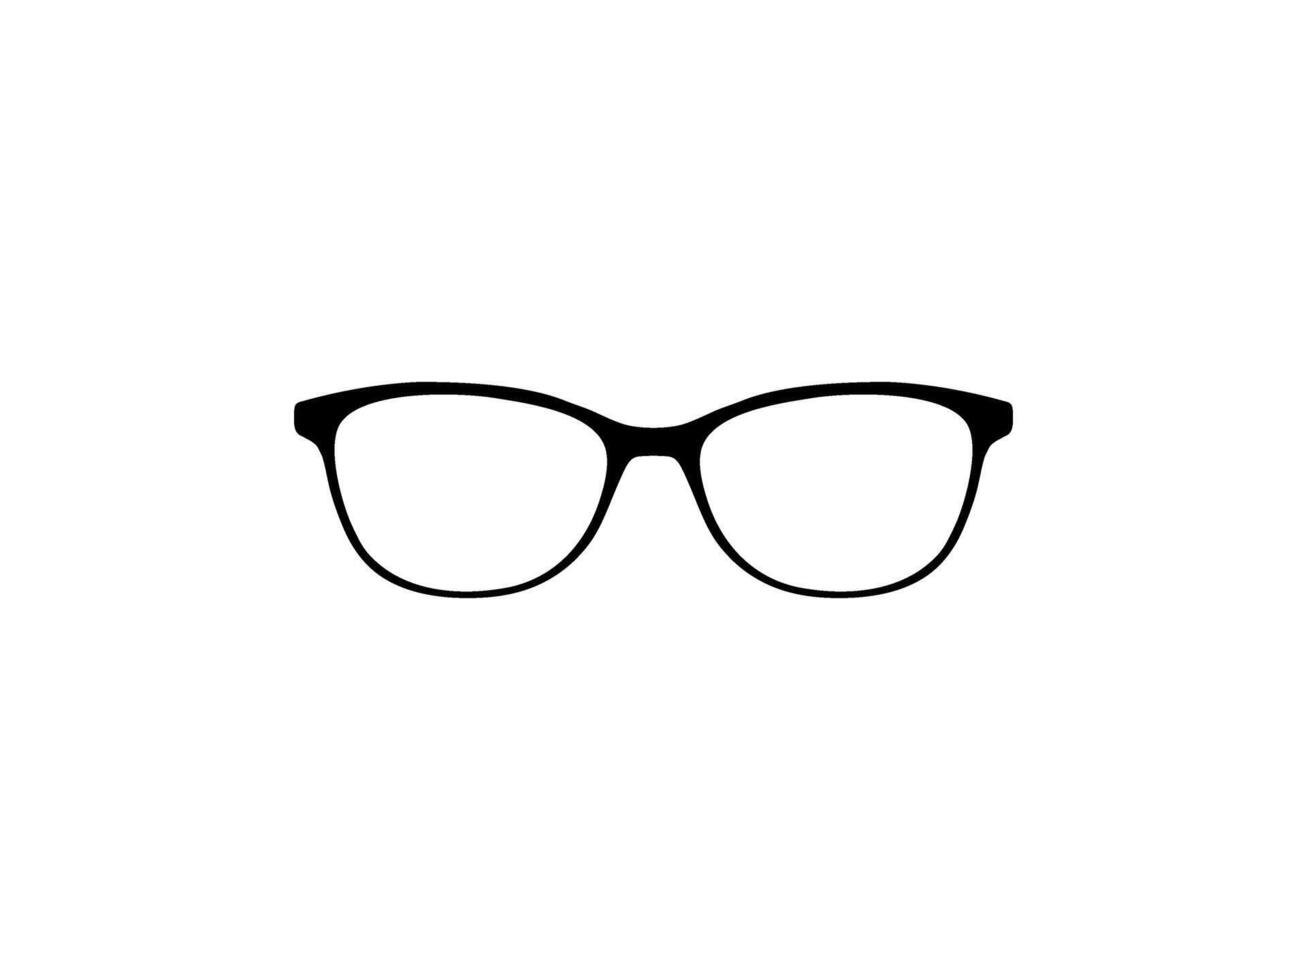 oog bril silhouet, voorkant visie, vlak stijl, kan gebruik voor pictogram, logo gram, appjes, kunst illustratie, sjabloon voor avatar profiel afbeelding, website, of grafisch ontwerp element. vector illustratie